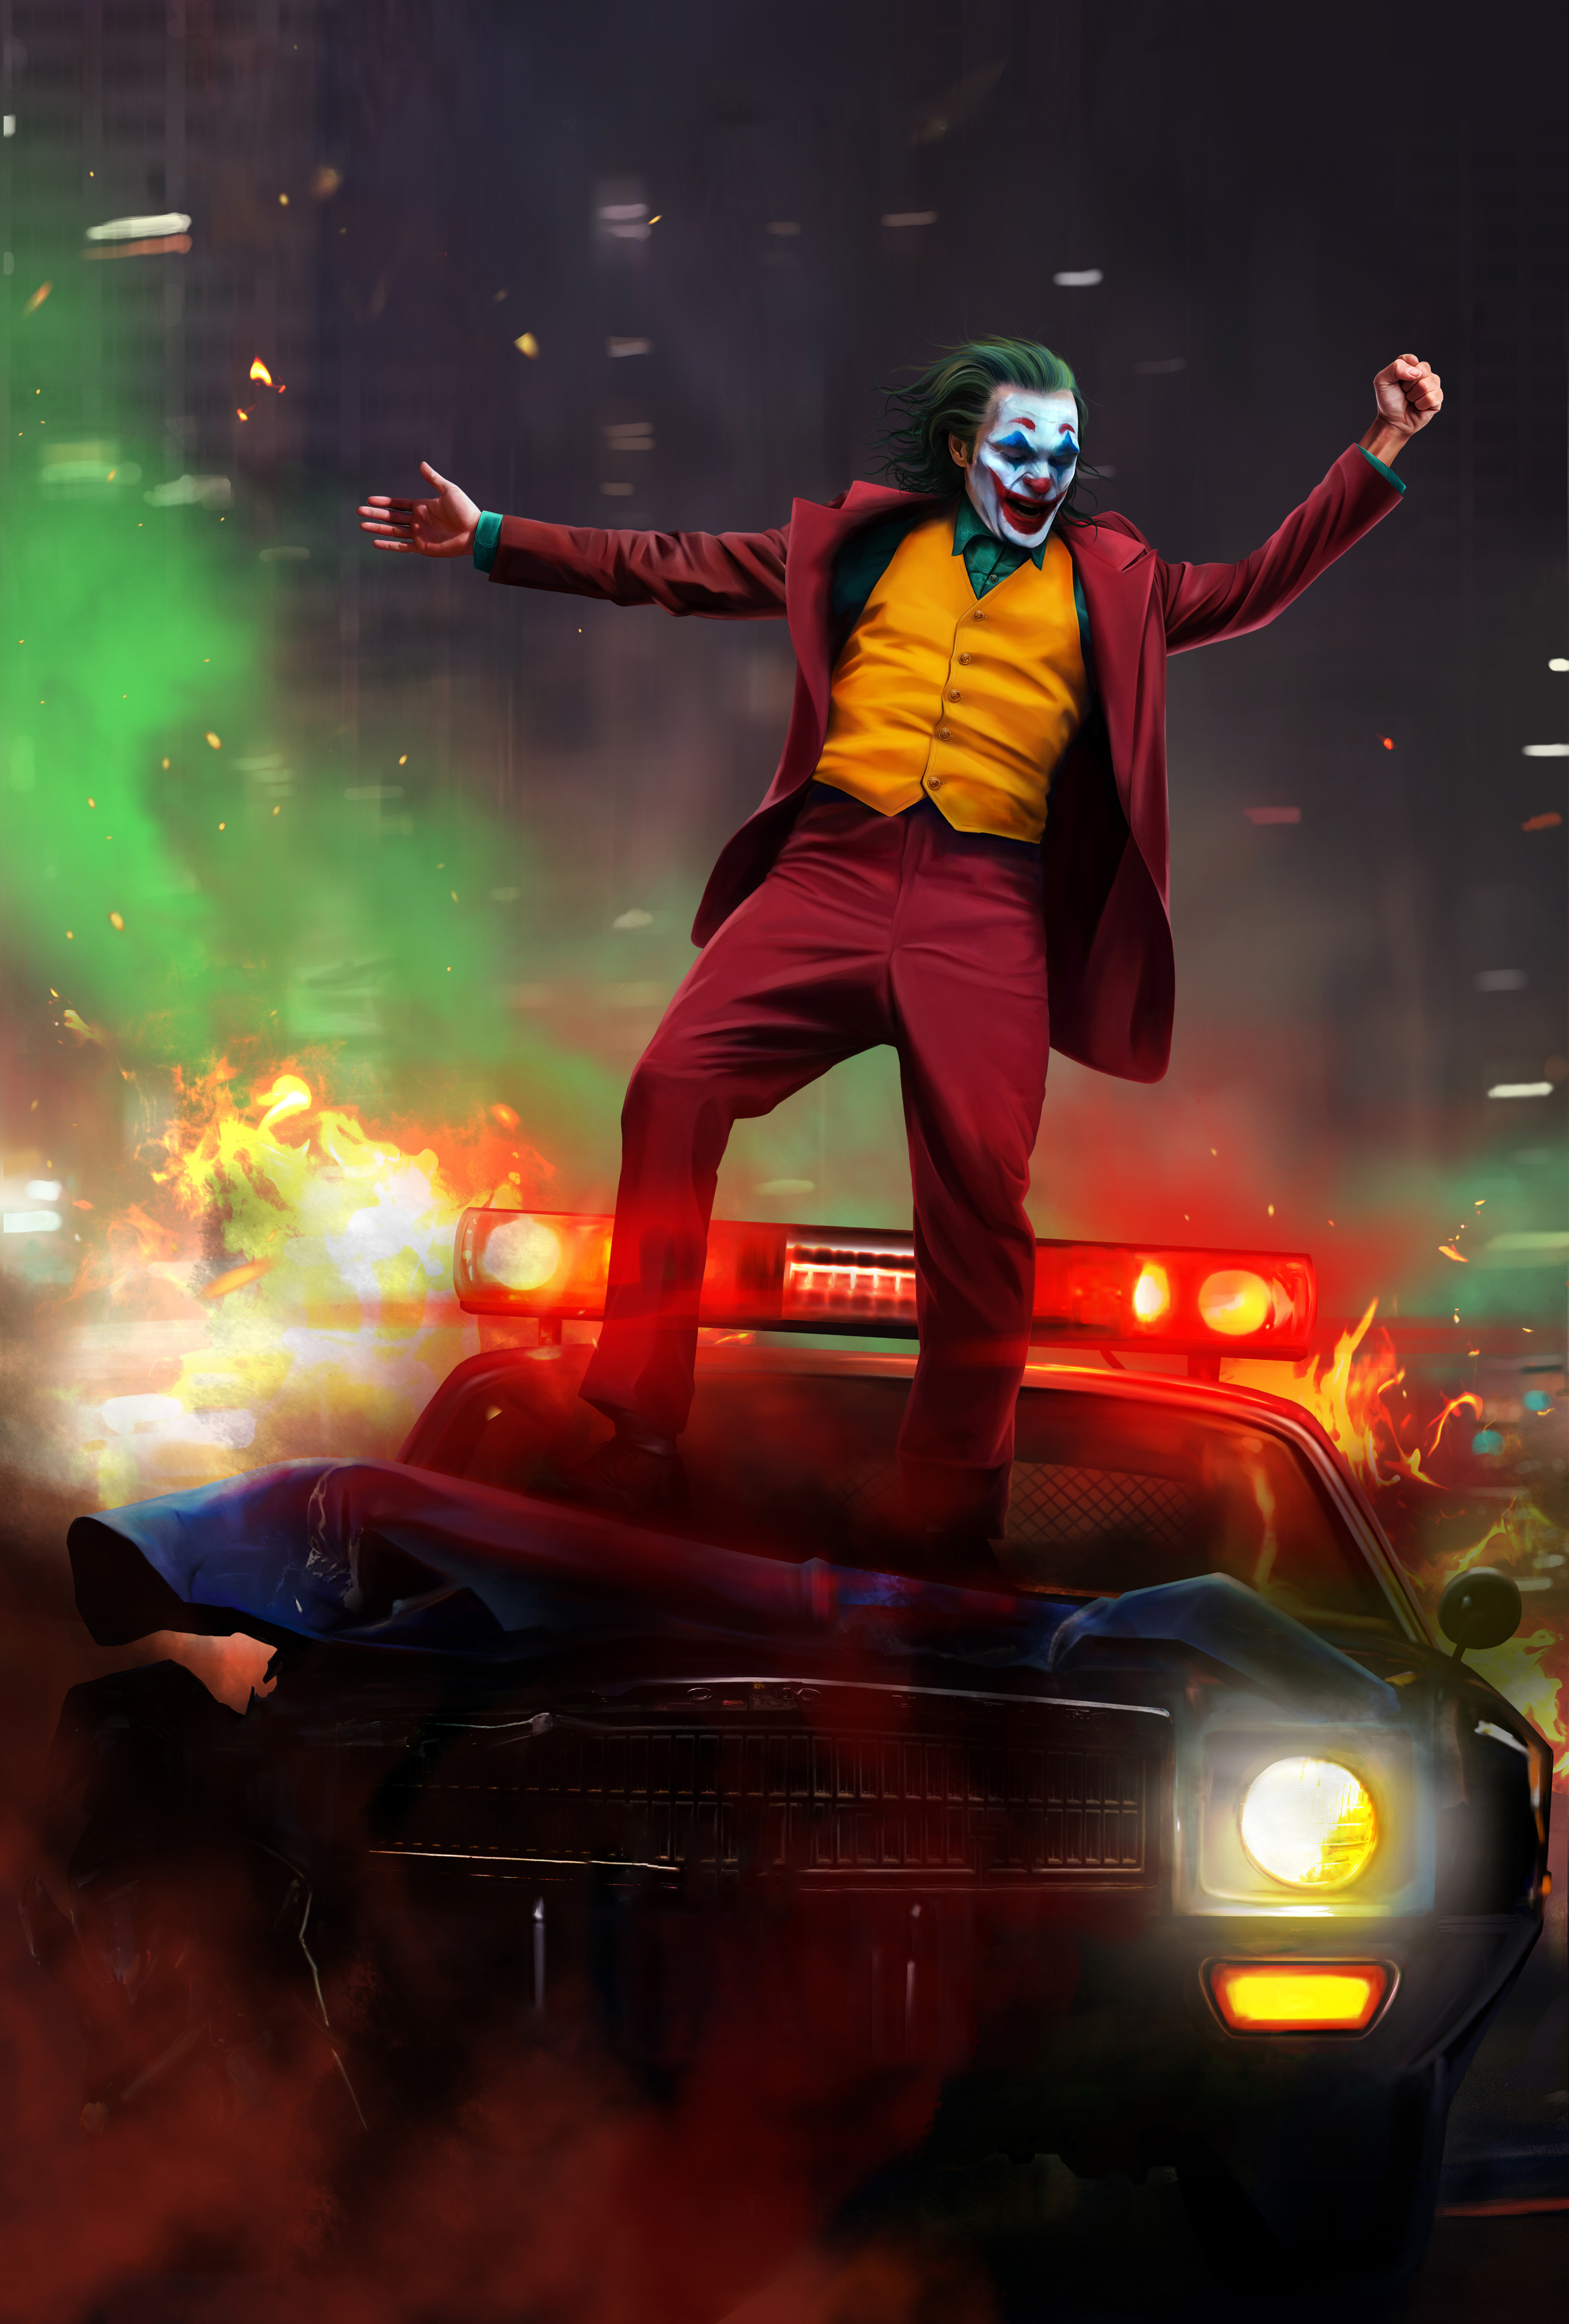 Joker 2019 Wallpaper 4k For Mobile Download